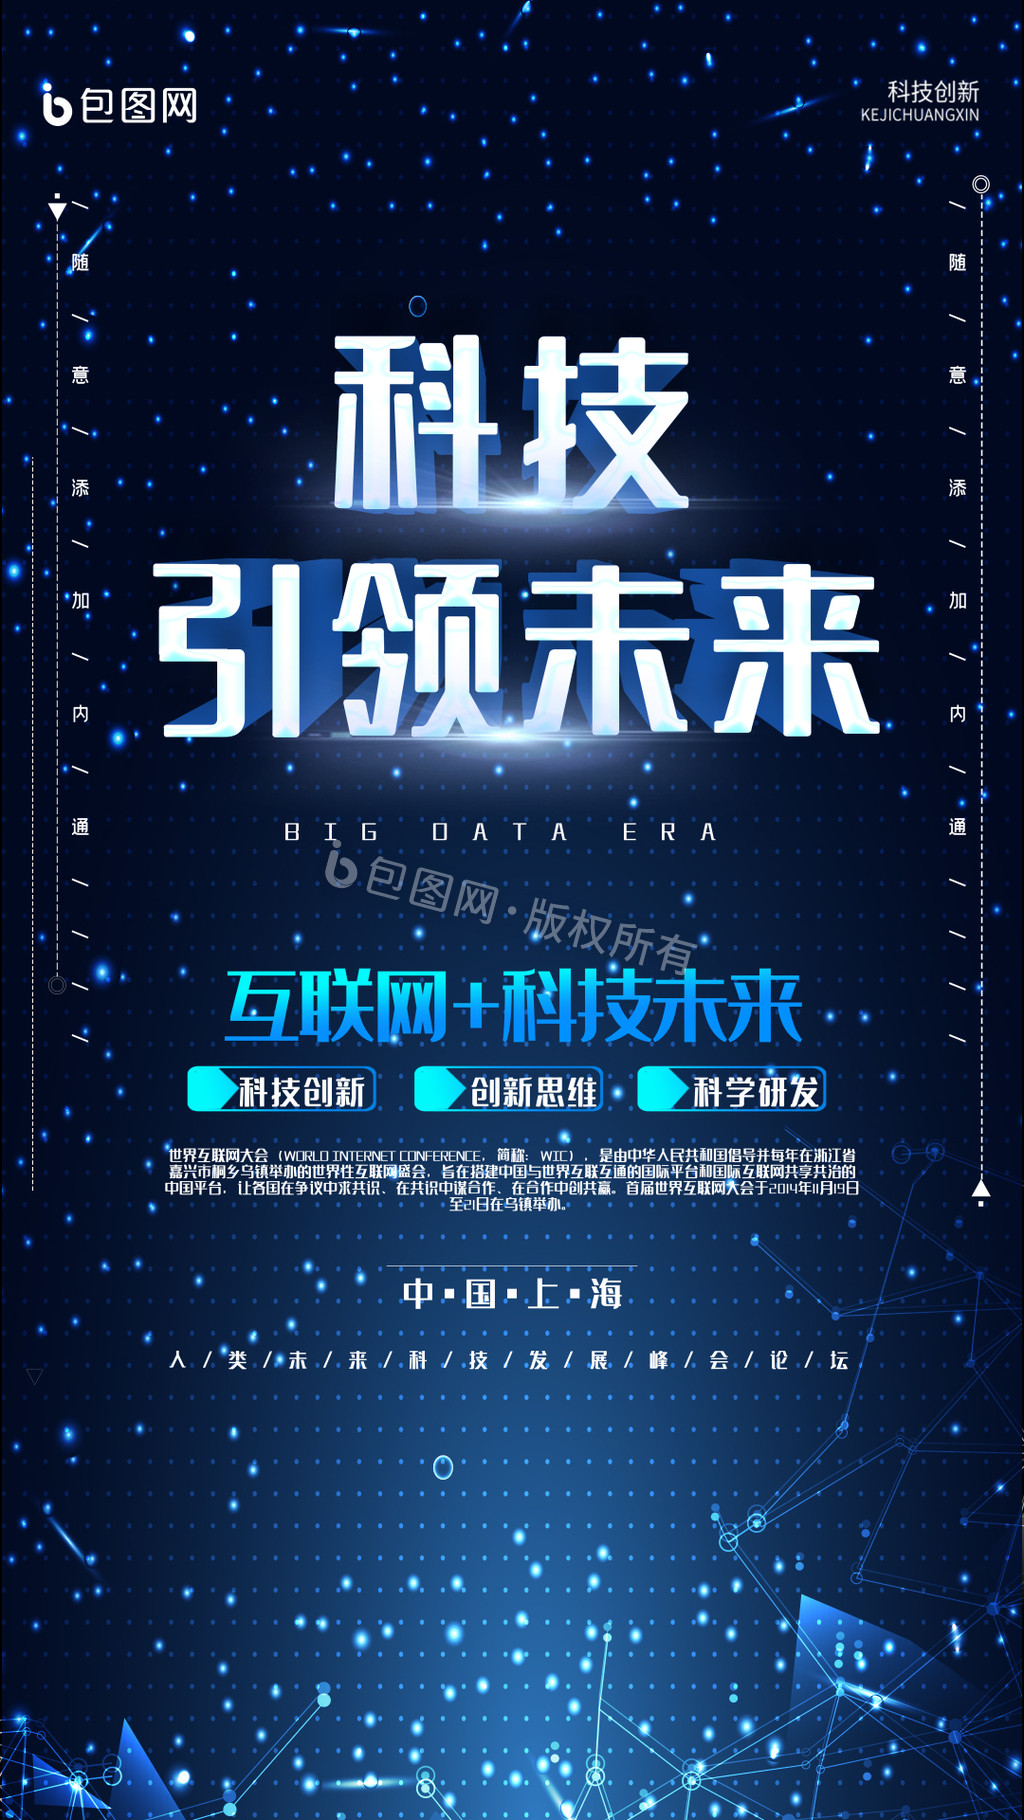 蓝黑色大数据科技公司科技互联网宣传中文海报 - 模板 - Canva可画